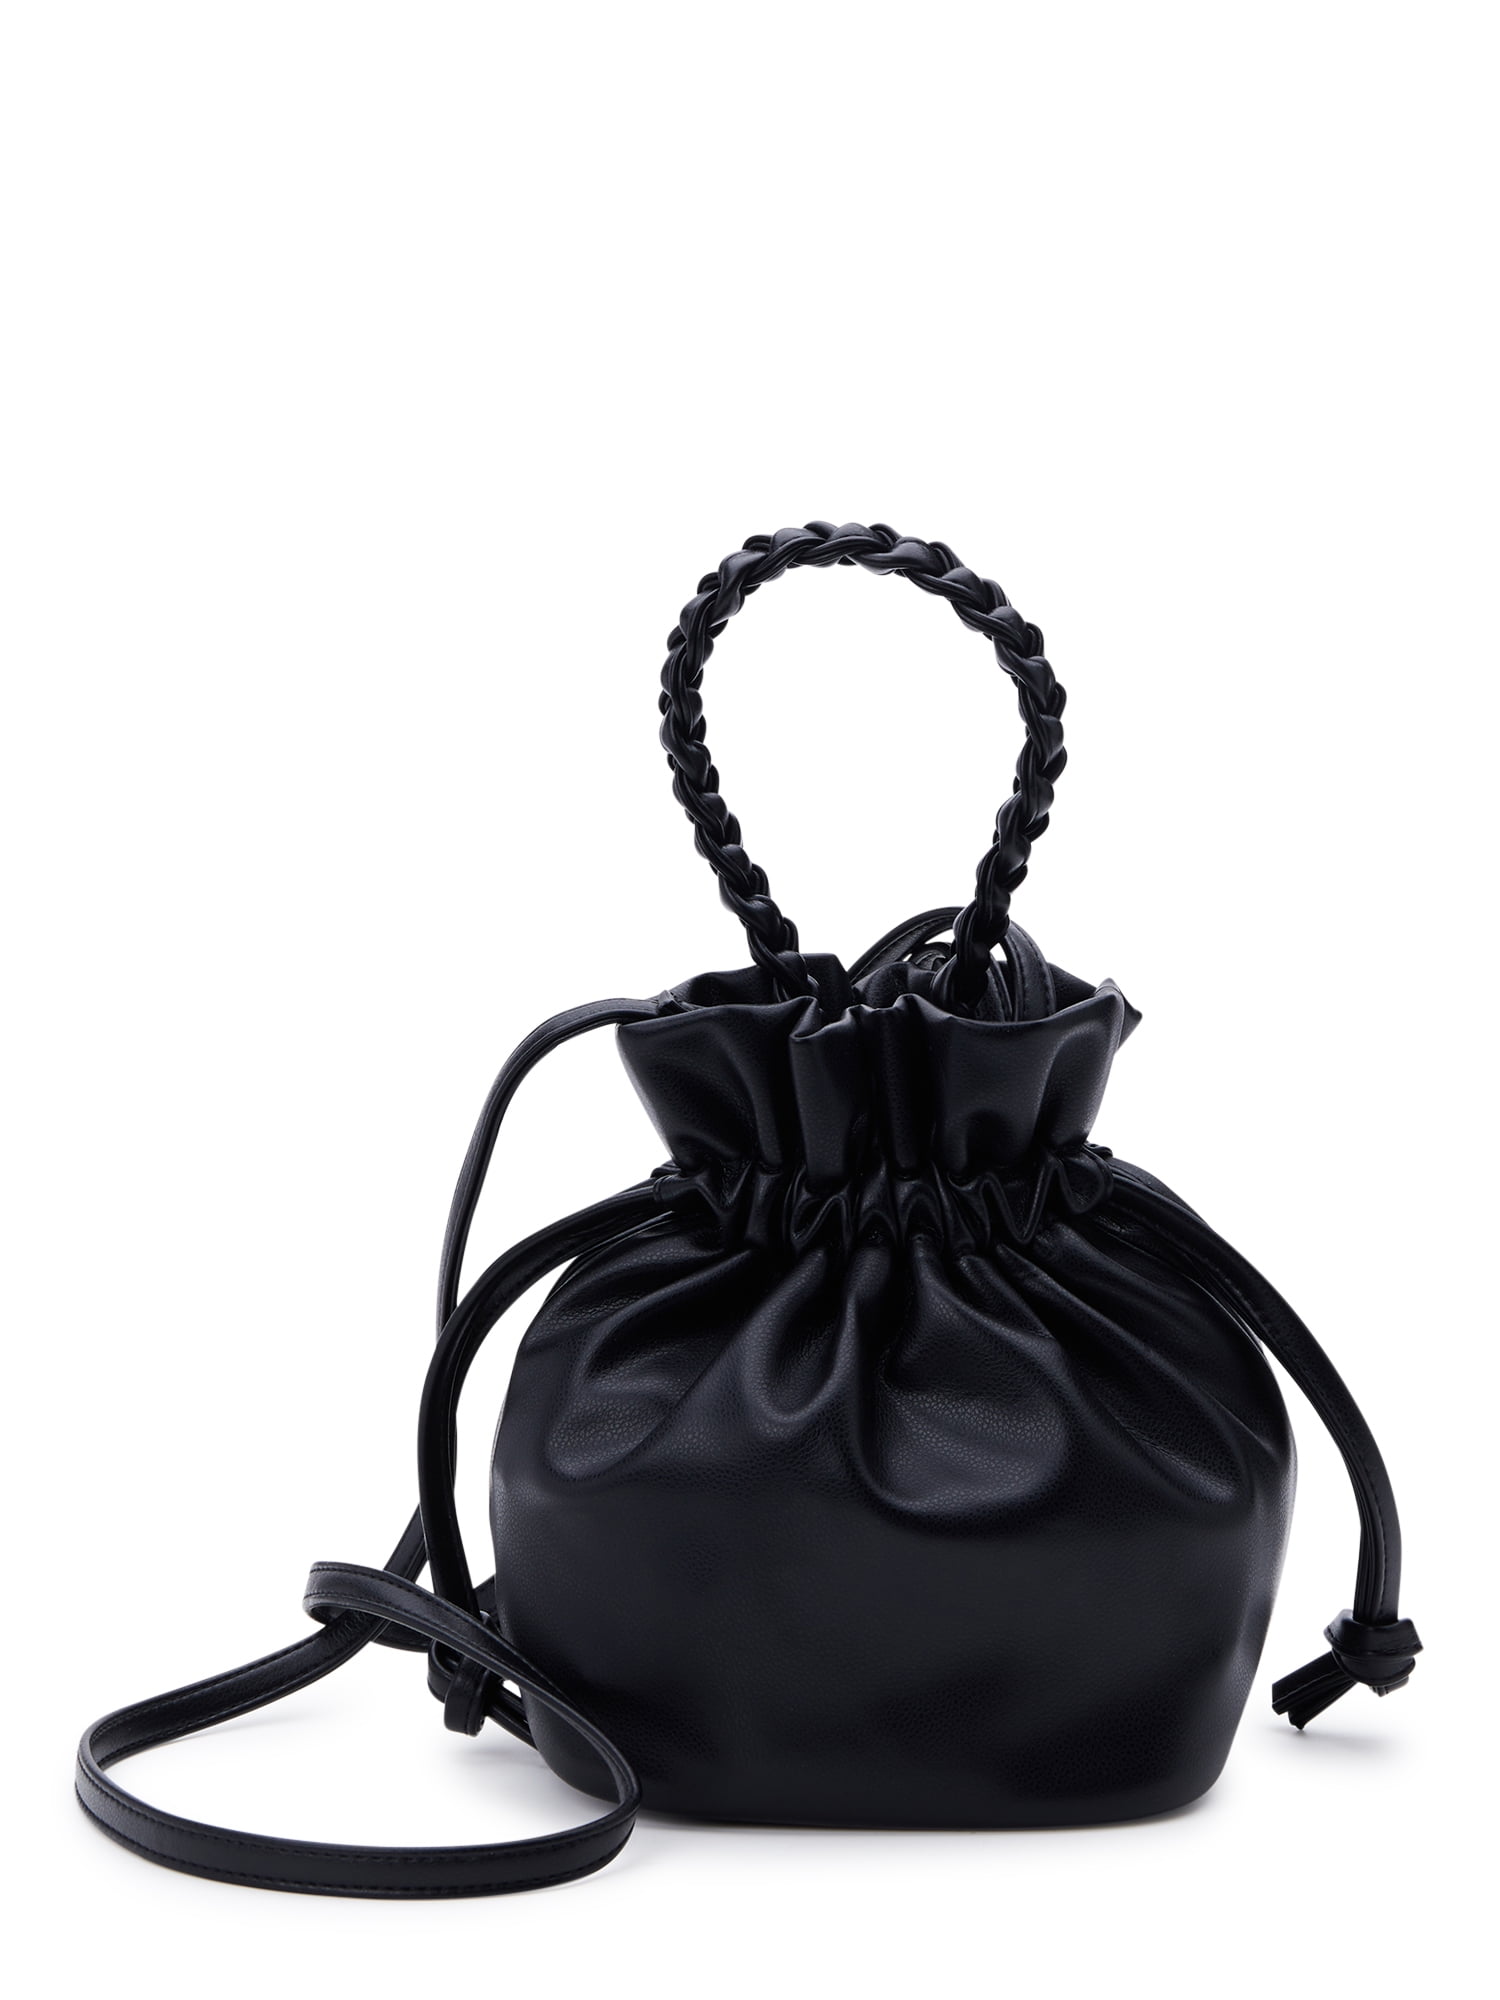 Hot Genuine Leather Women's Designer Tote Handbag Bucket Bag Sling  Shoulder Bag